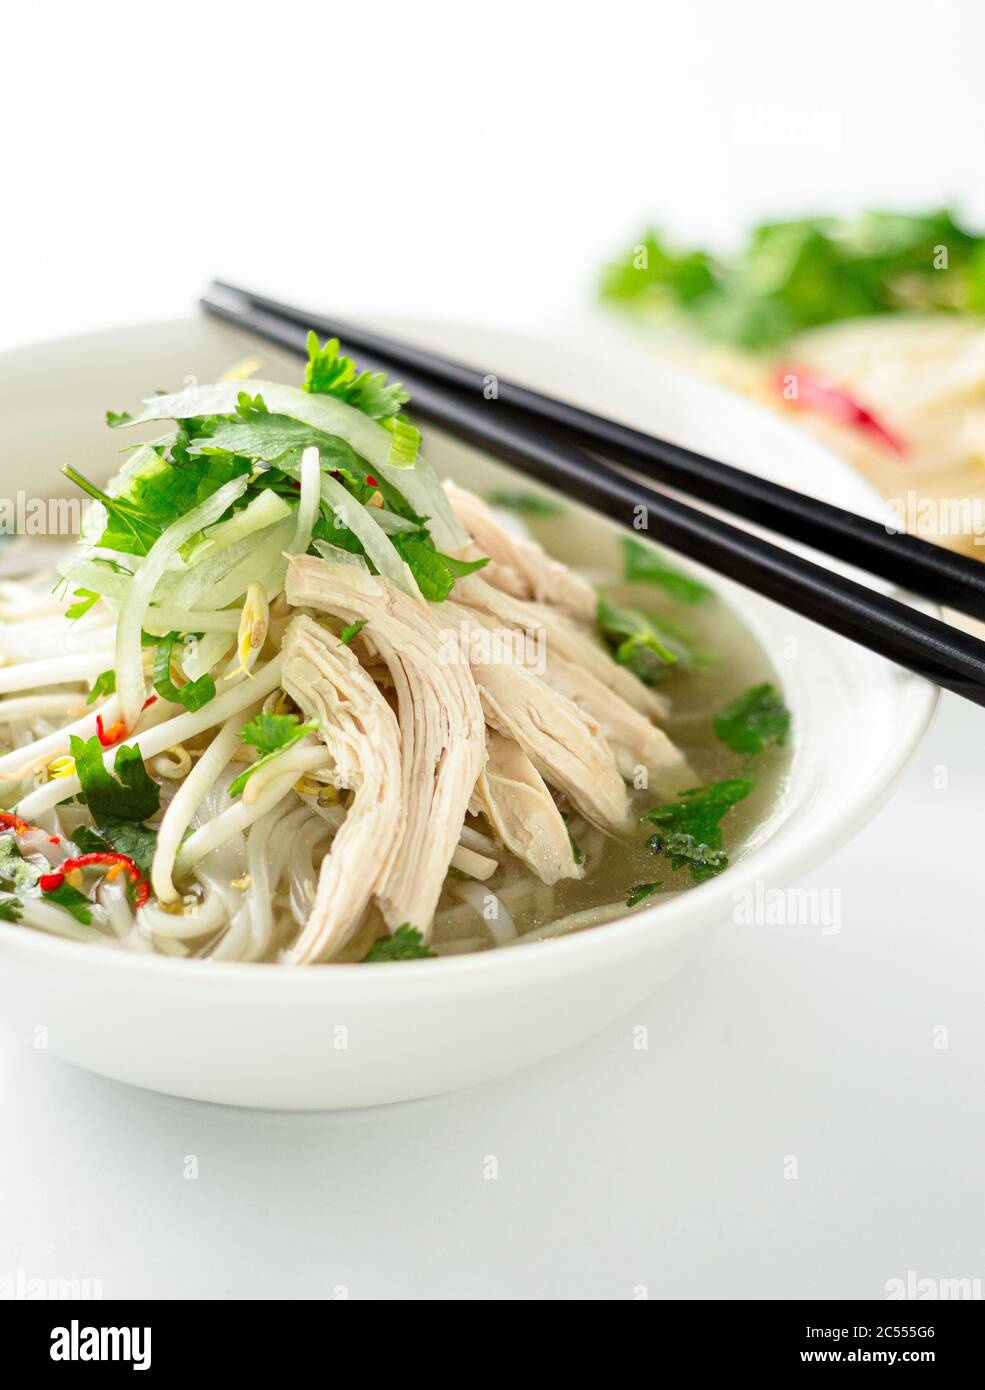 Vietnamesische Pho Suppe Gericht Portrait Ansicht. Diese Pho-Suppe ist ein klassisches, authentisches vietnamesisches Essen und wird in einer weißen Schüssel mit Hühnerbrühe und viel Frust serviert Stockfoto